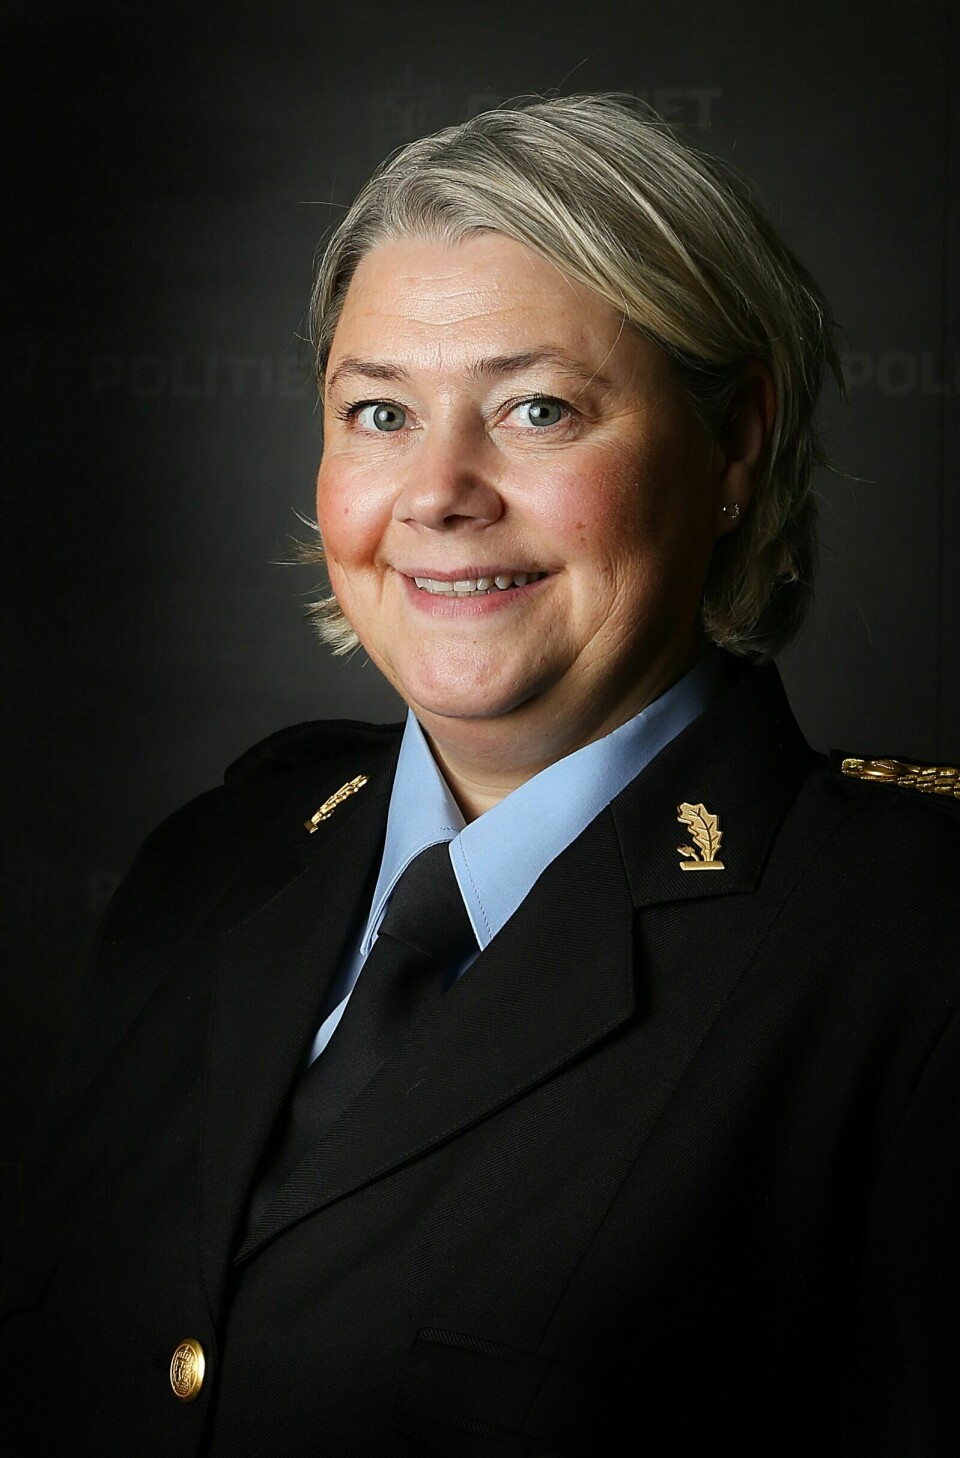 ANSETTER FLERE: Politimester Astrid Nilsen får ansette 12 nye politifolk i Troms politidistrikt. Foto: Pressefoto